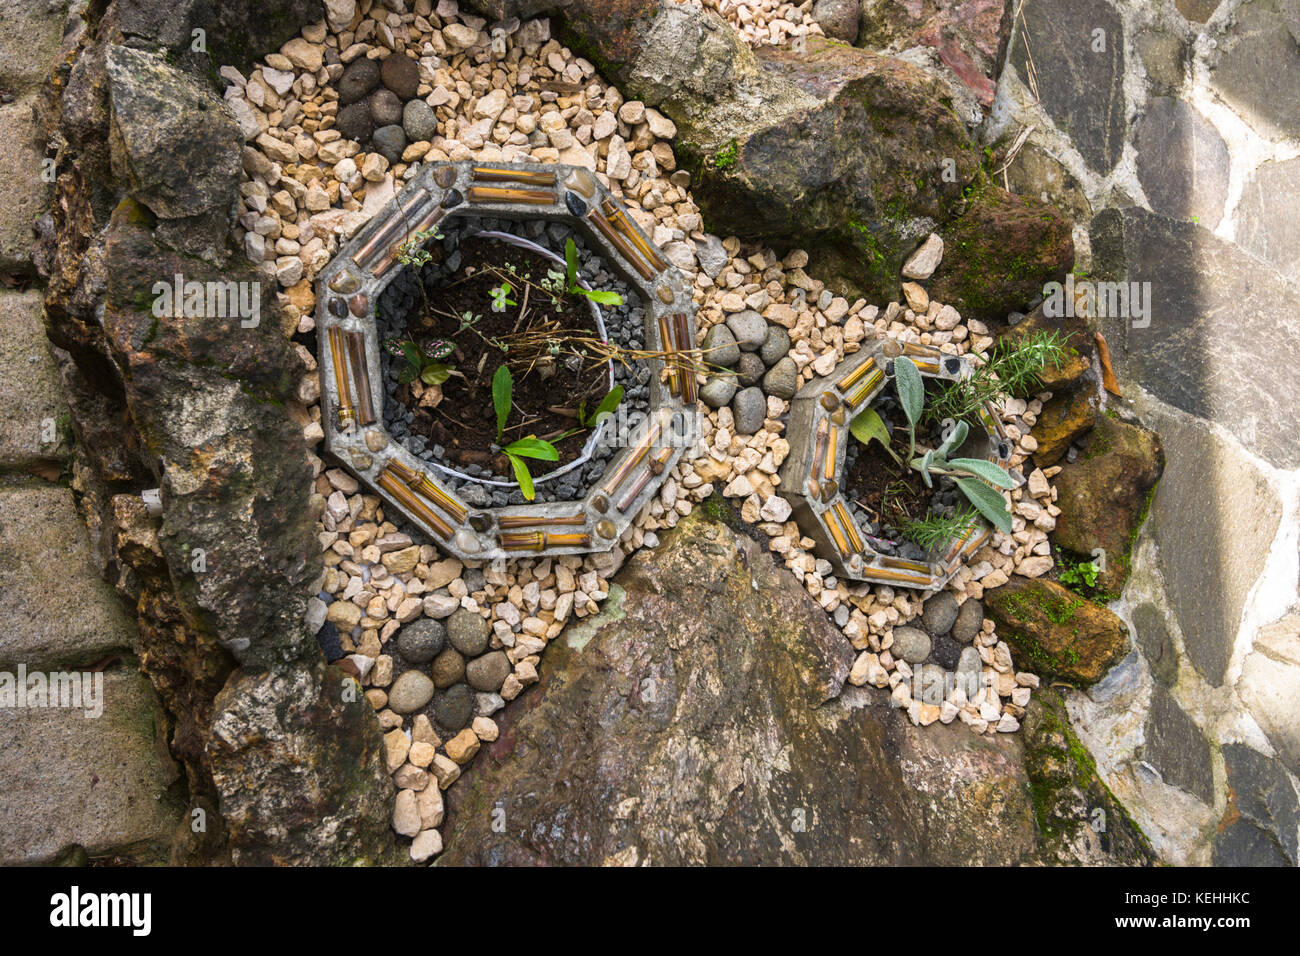 Jardín paisajismo ideas creativas jardín de piedras pequeñas Foto de stock